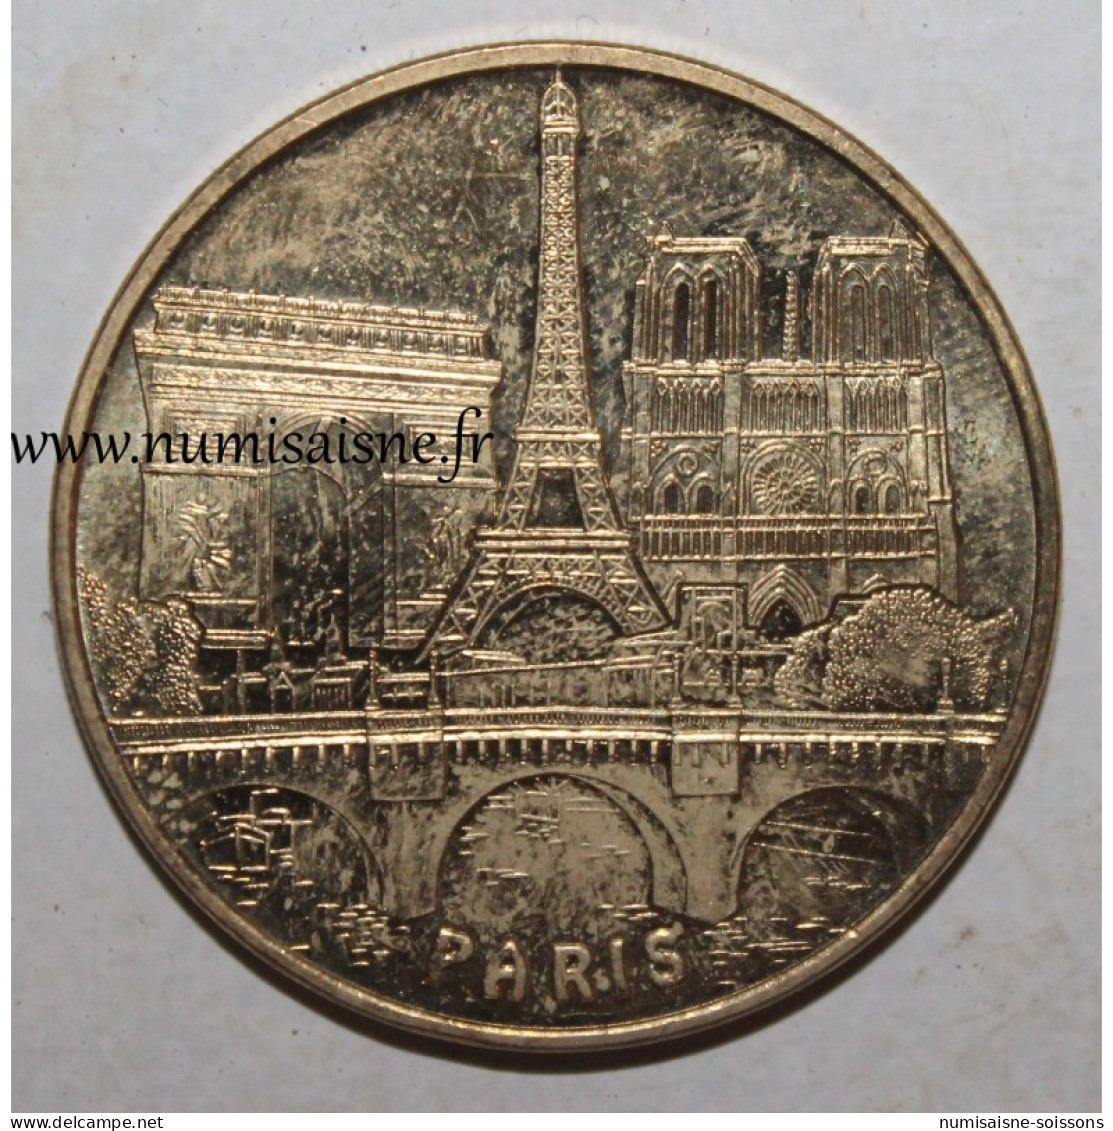 75 - PARIS - LES 3 MONUMENTS ET LE PONT NEUF - Monnaie De Paris - 2011 - TTB - 2011